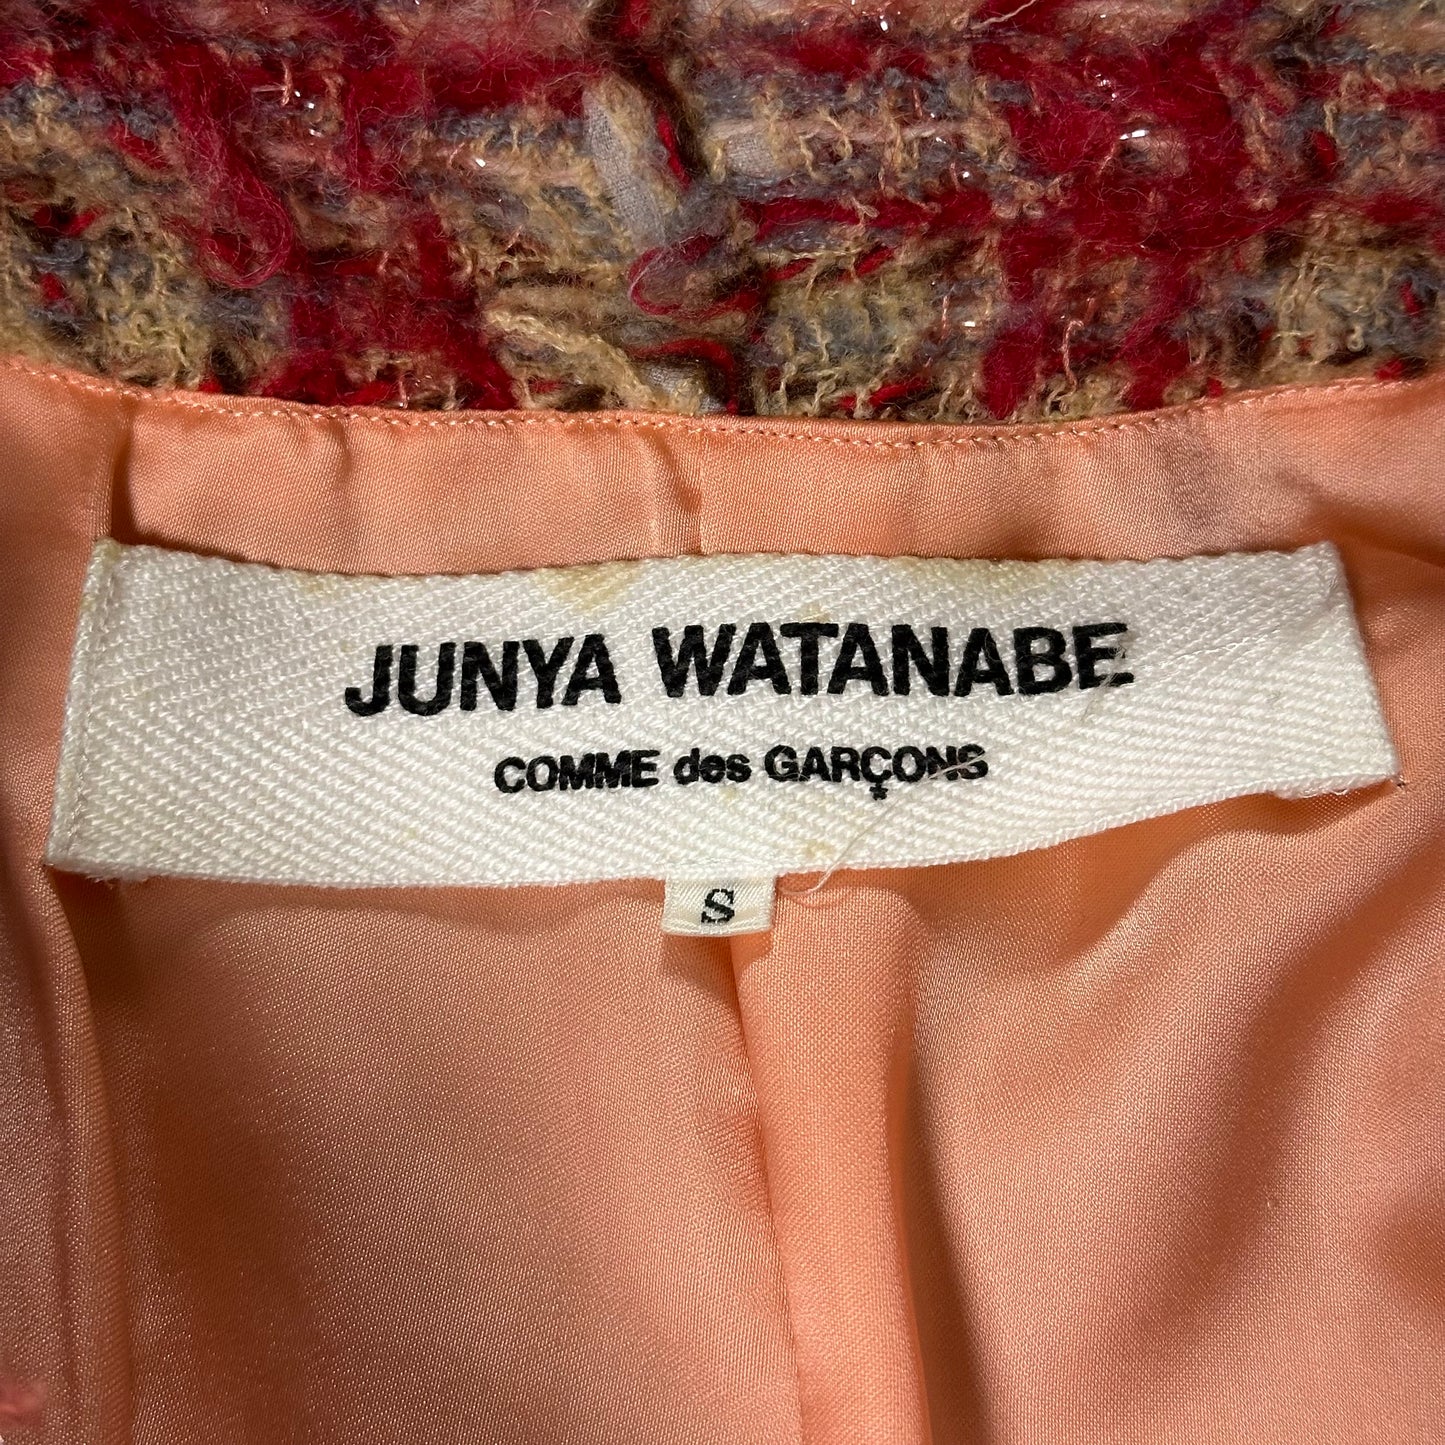 JUNYA WATANABE Fall Winter 2003 Tweed Jacket and Skirt Set Up